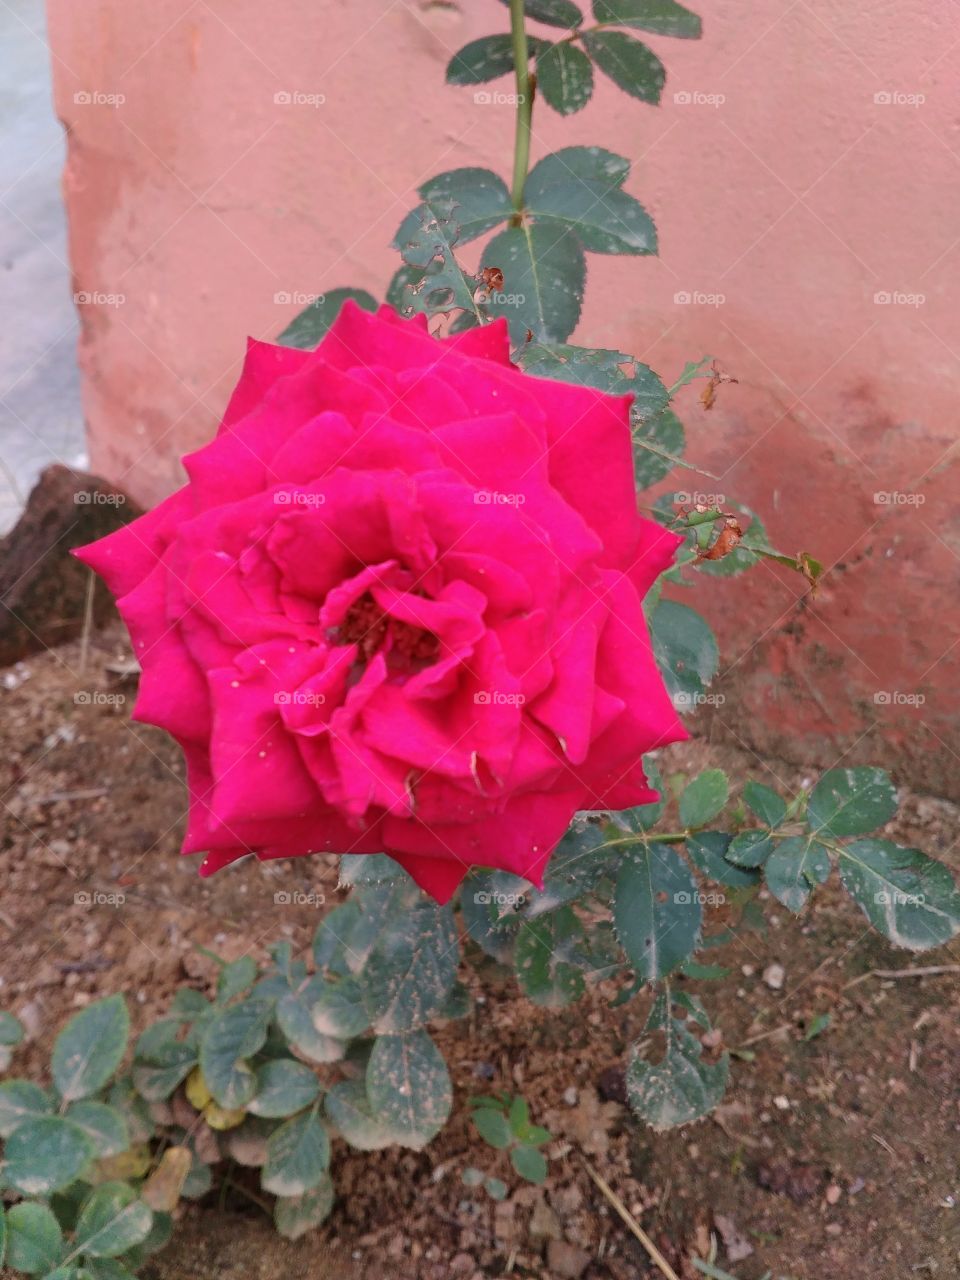 My garden
a beautiful pink flower